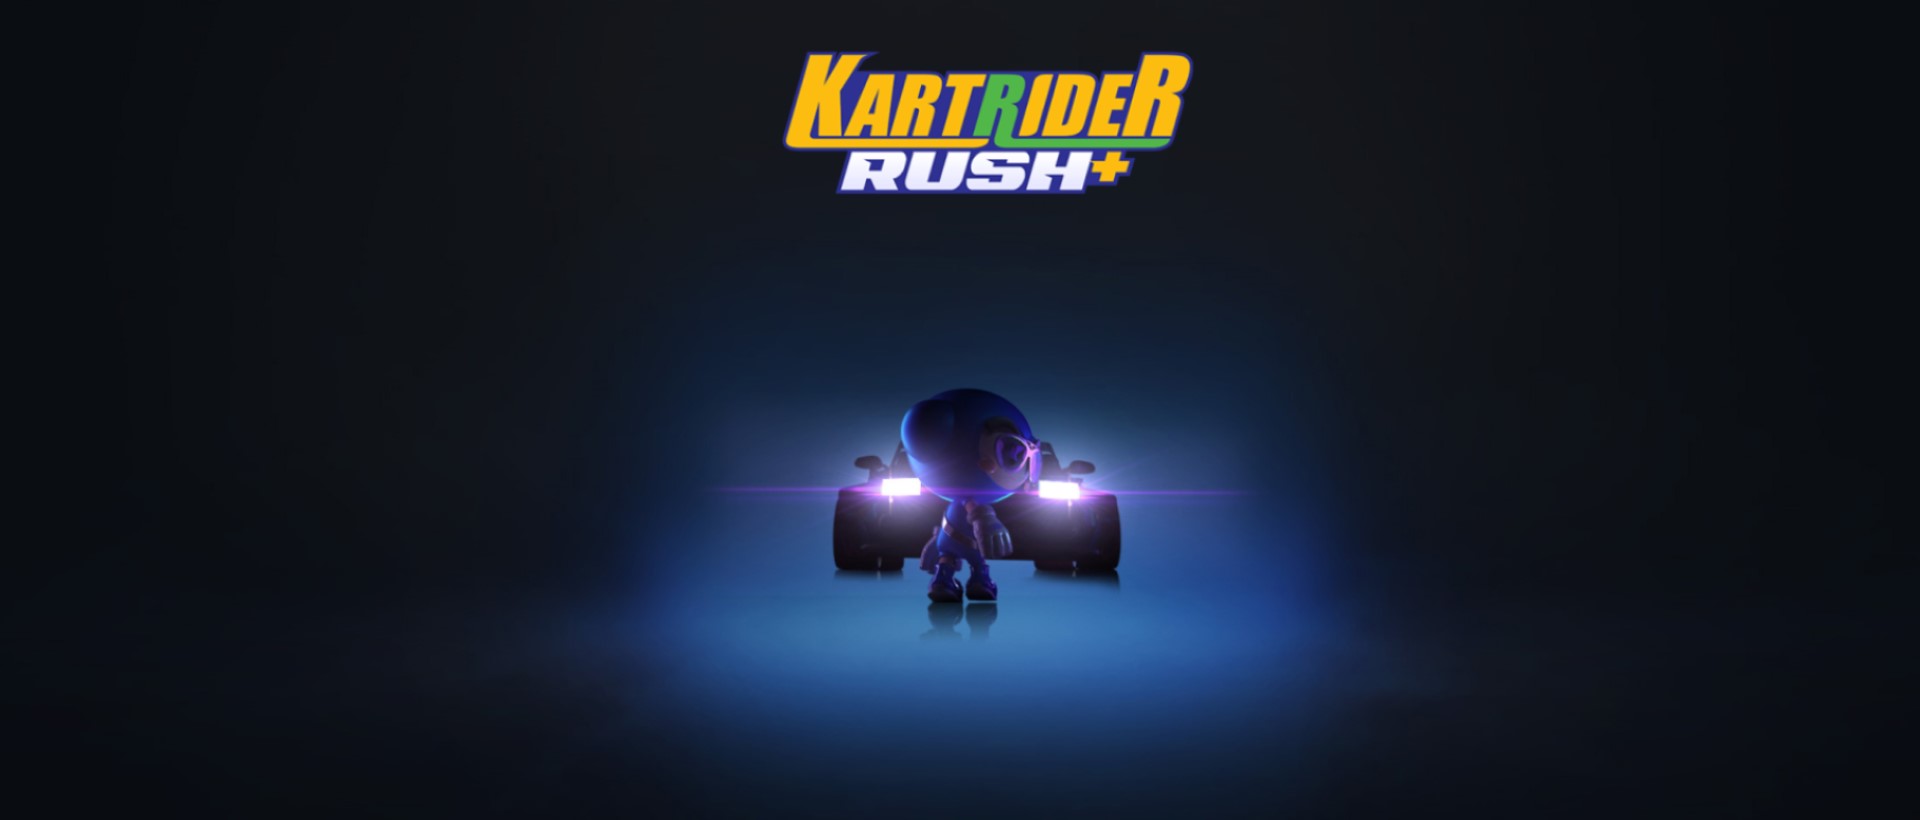 Chơi KartRider Rush+ trên máy tính/PC cùng giả lập NoxPlayer